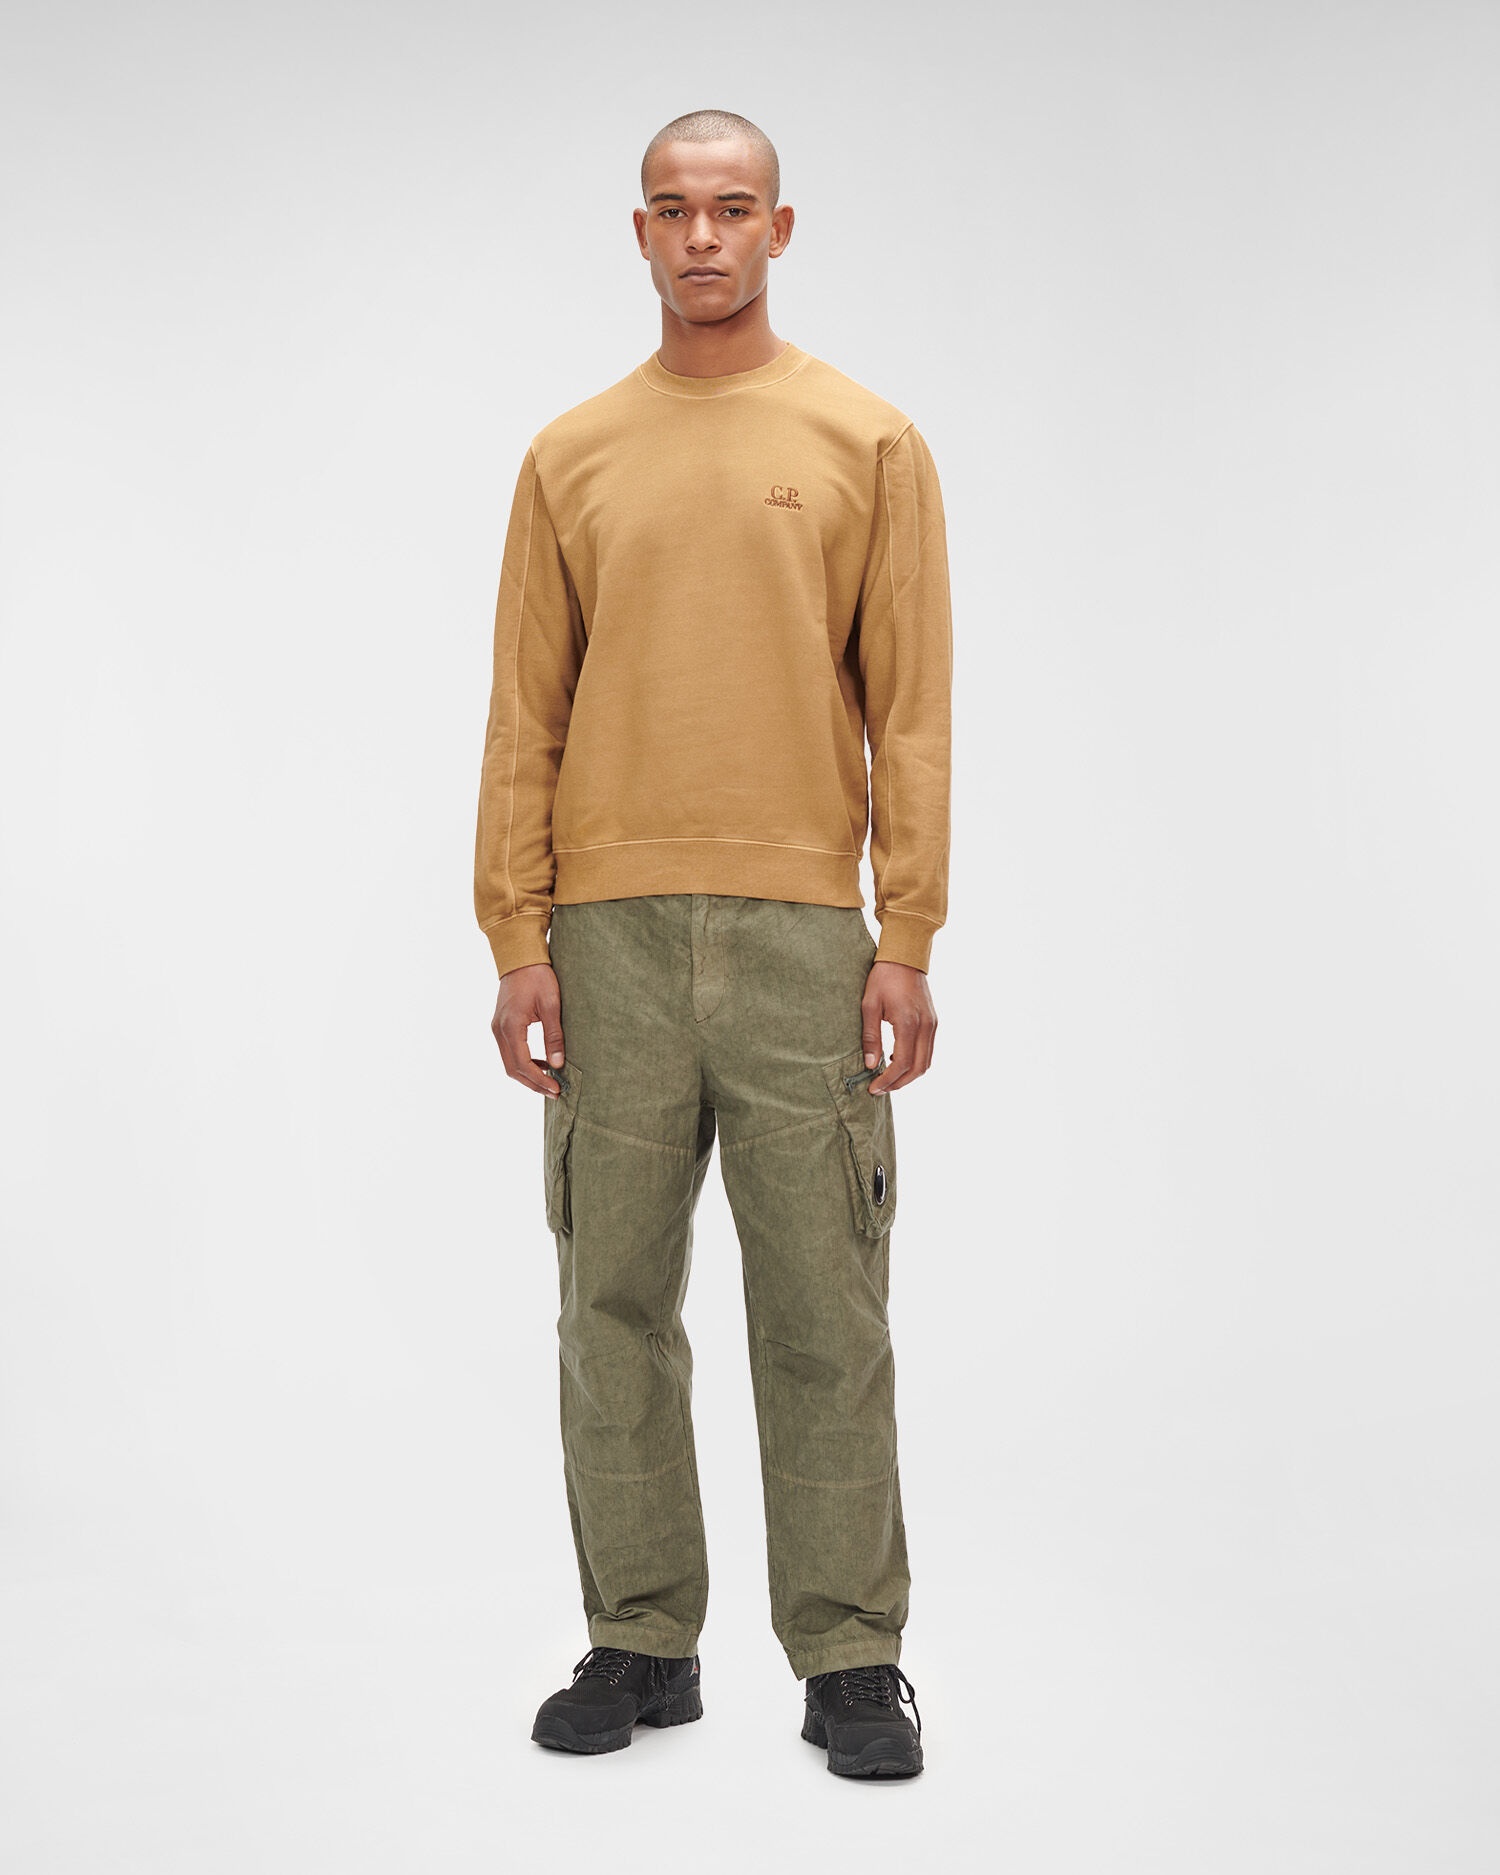 Brushed & Emerized Diagonal Fleece Sweatshirt - 3